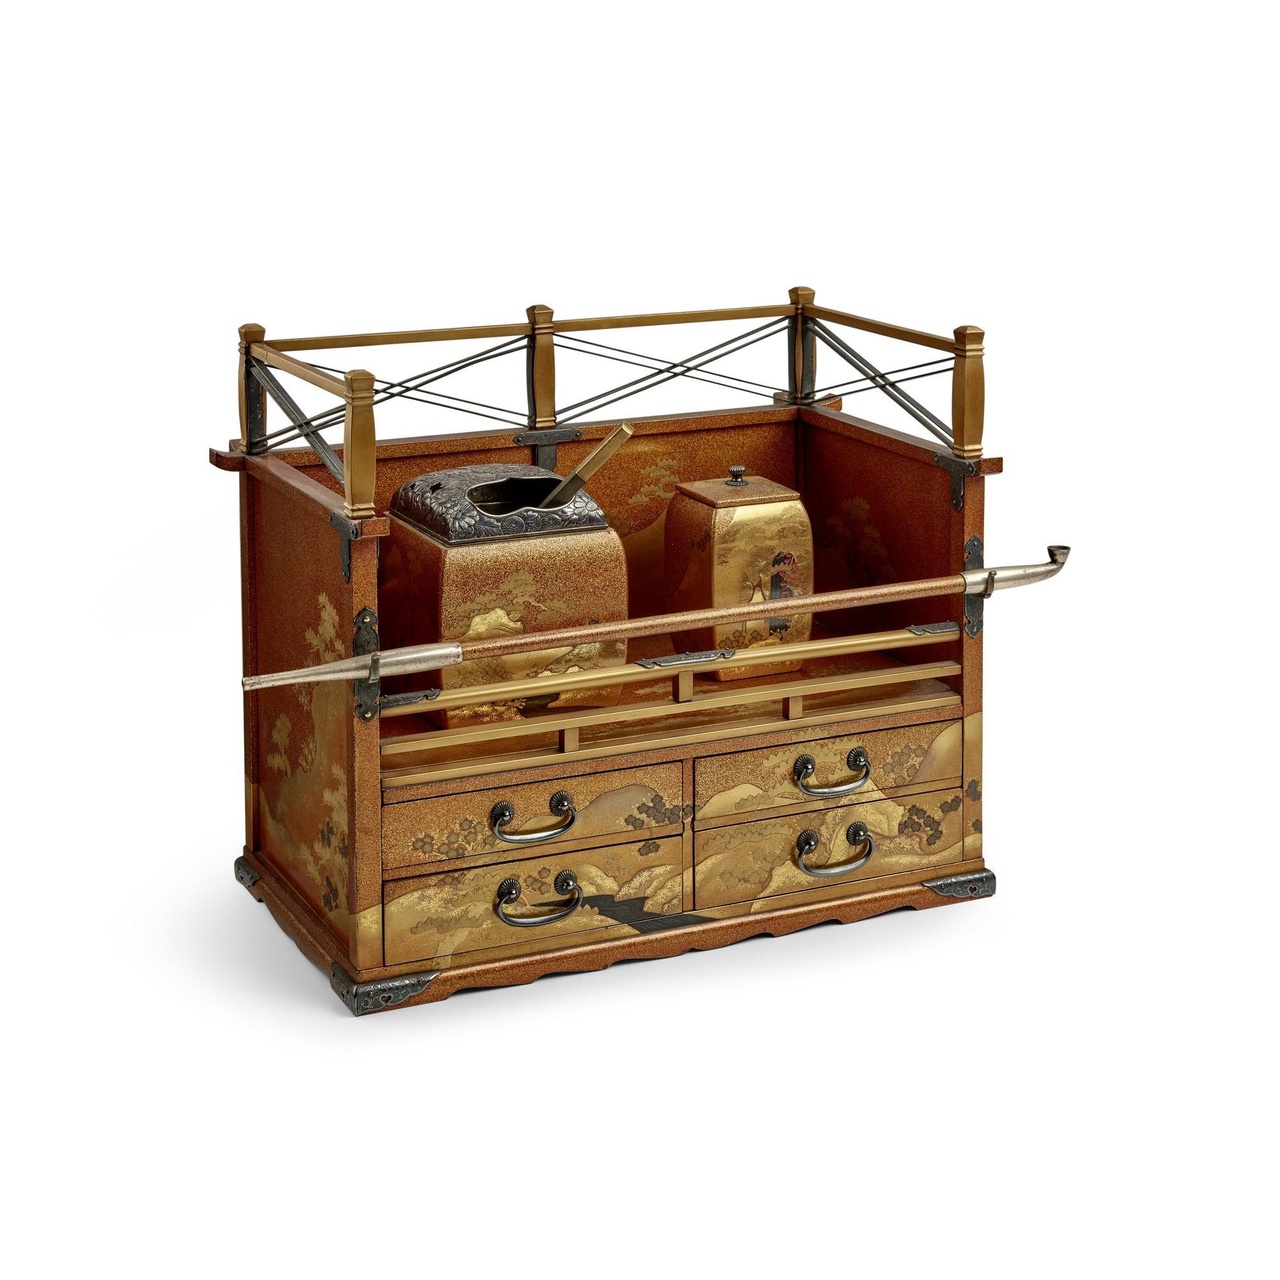 江戶時期之各式逸品：一套19世紀江戶時代金漆煙具（估價：5,000-7,000美元）
